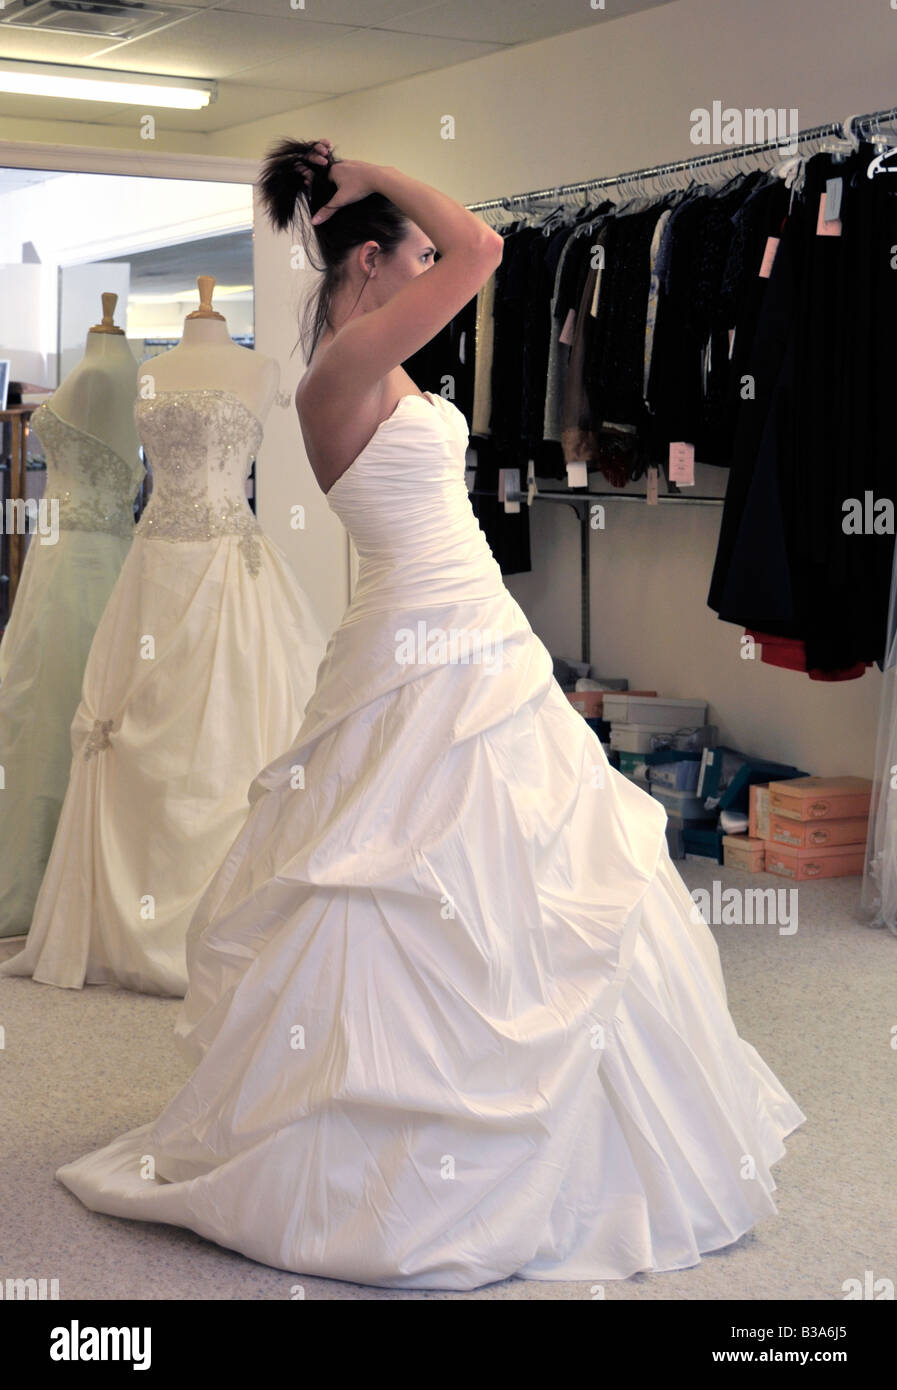 Eine 21 jährige Braut hat eine passende für ihr Brautkleid. Sie sammelt ihr Haar zu sehen wie es aussieht. Stockfoto